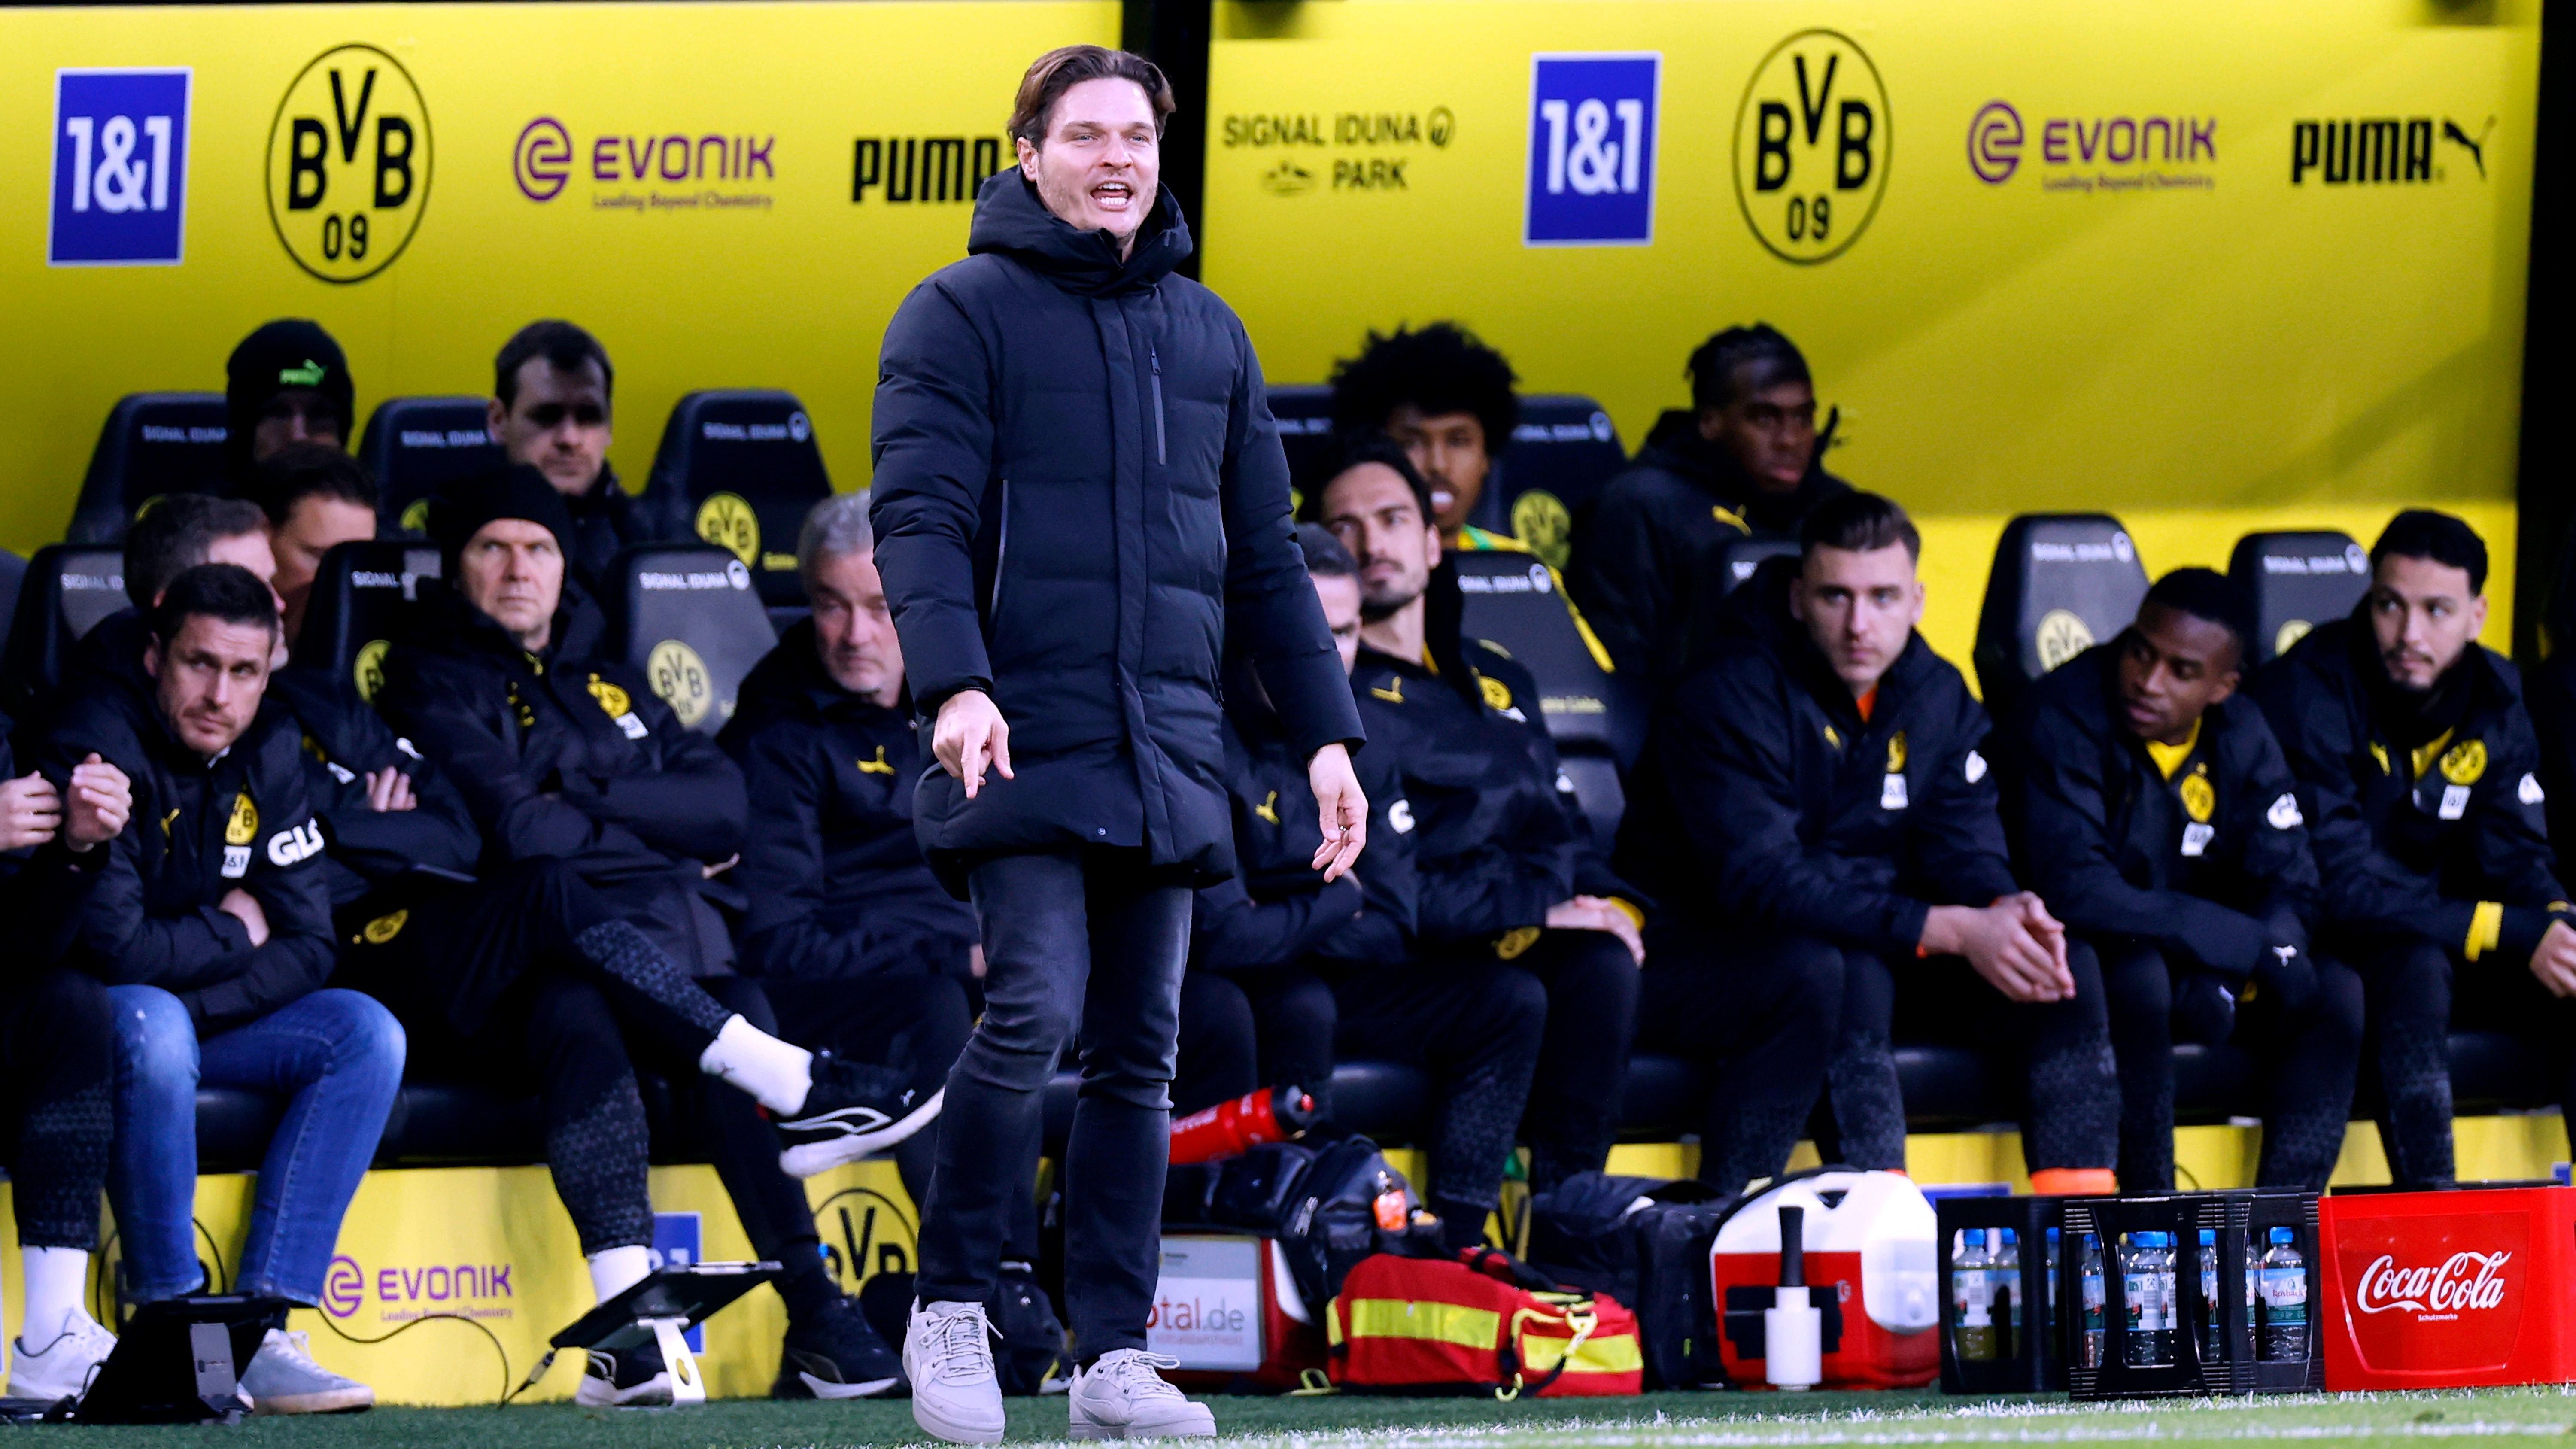 <strong>Borussia Dortmund vergeigt jetzt sogar noch die Champions League</strong><br>Edin Terzic bleibt dennoch erstmal Trainer des BVB. Den bekennenden Dortmunder mitten in der Saison rauszuschmeißen, das traut sich im Verein keiner. Außerdem: Es ist wirklich bemerkenswert wie schwankend der BVB auftritt. Auf begeisternde und mitreißende Leistungen, folgen häufig totale fußballerische Bankrotterklärungen.